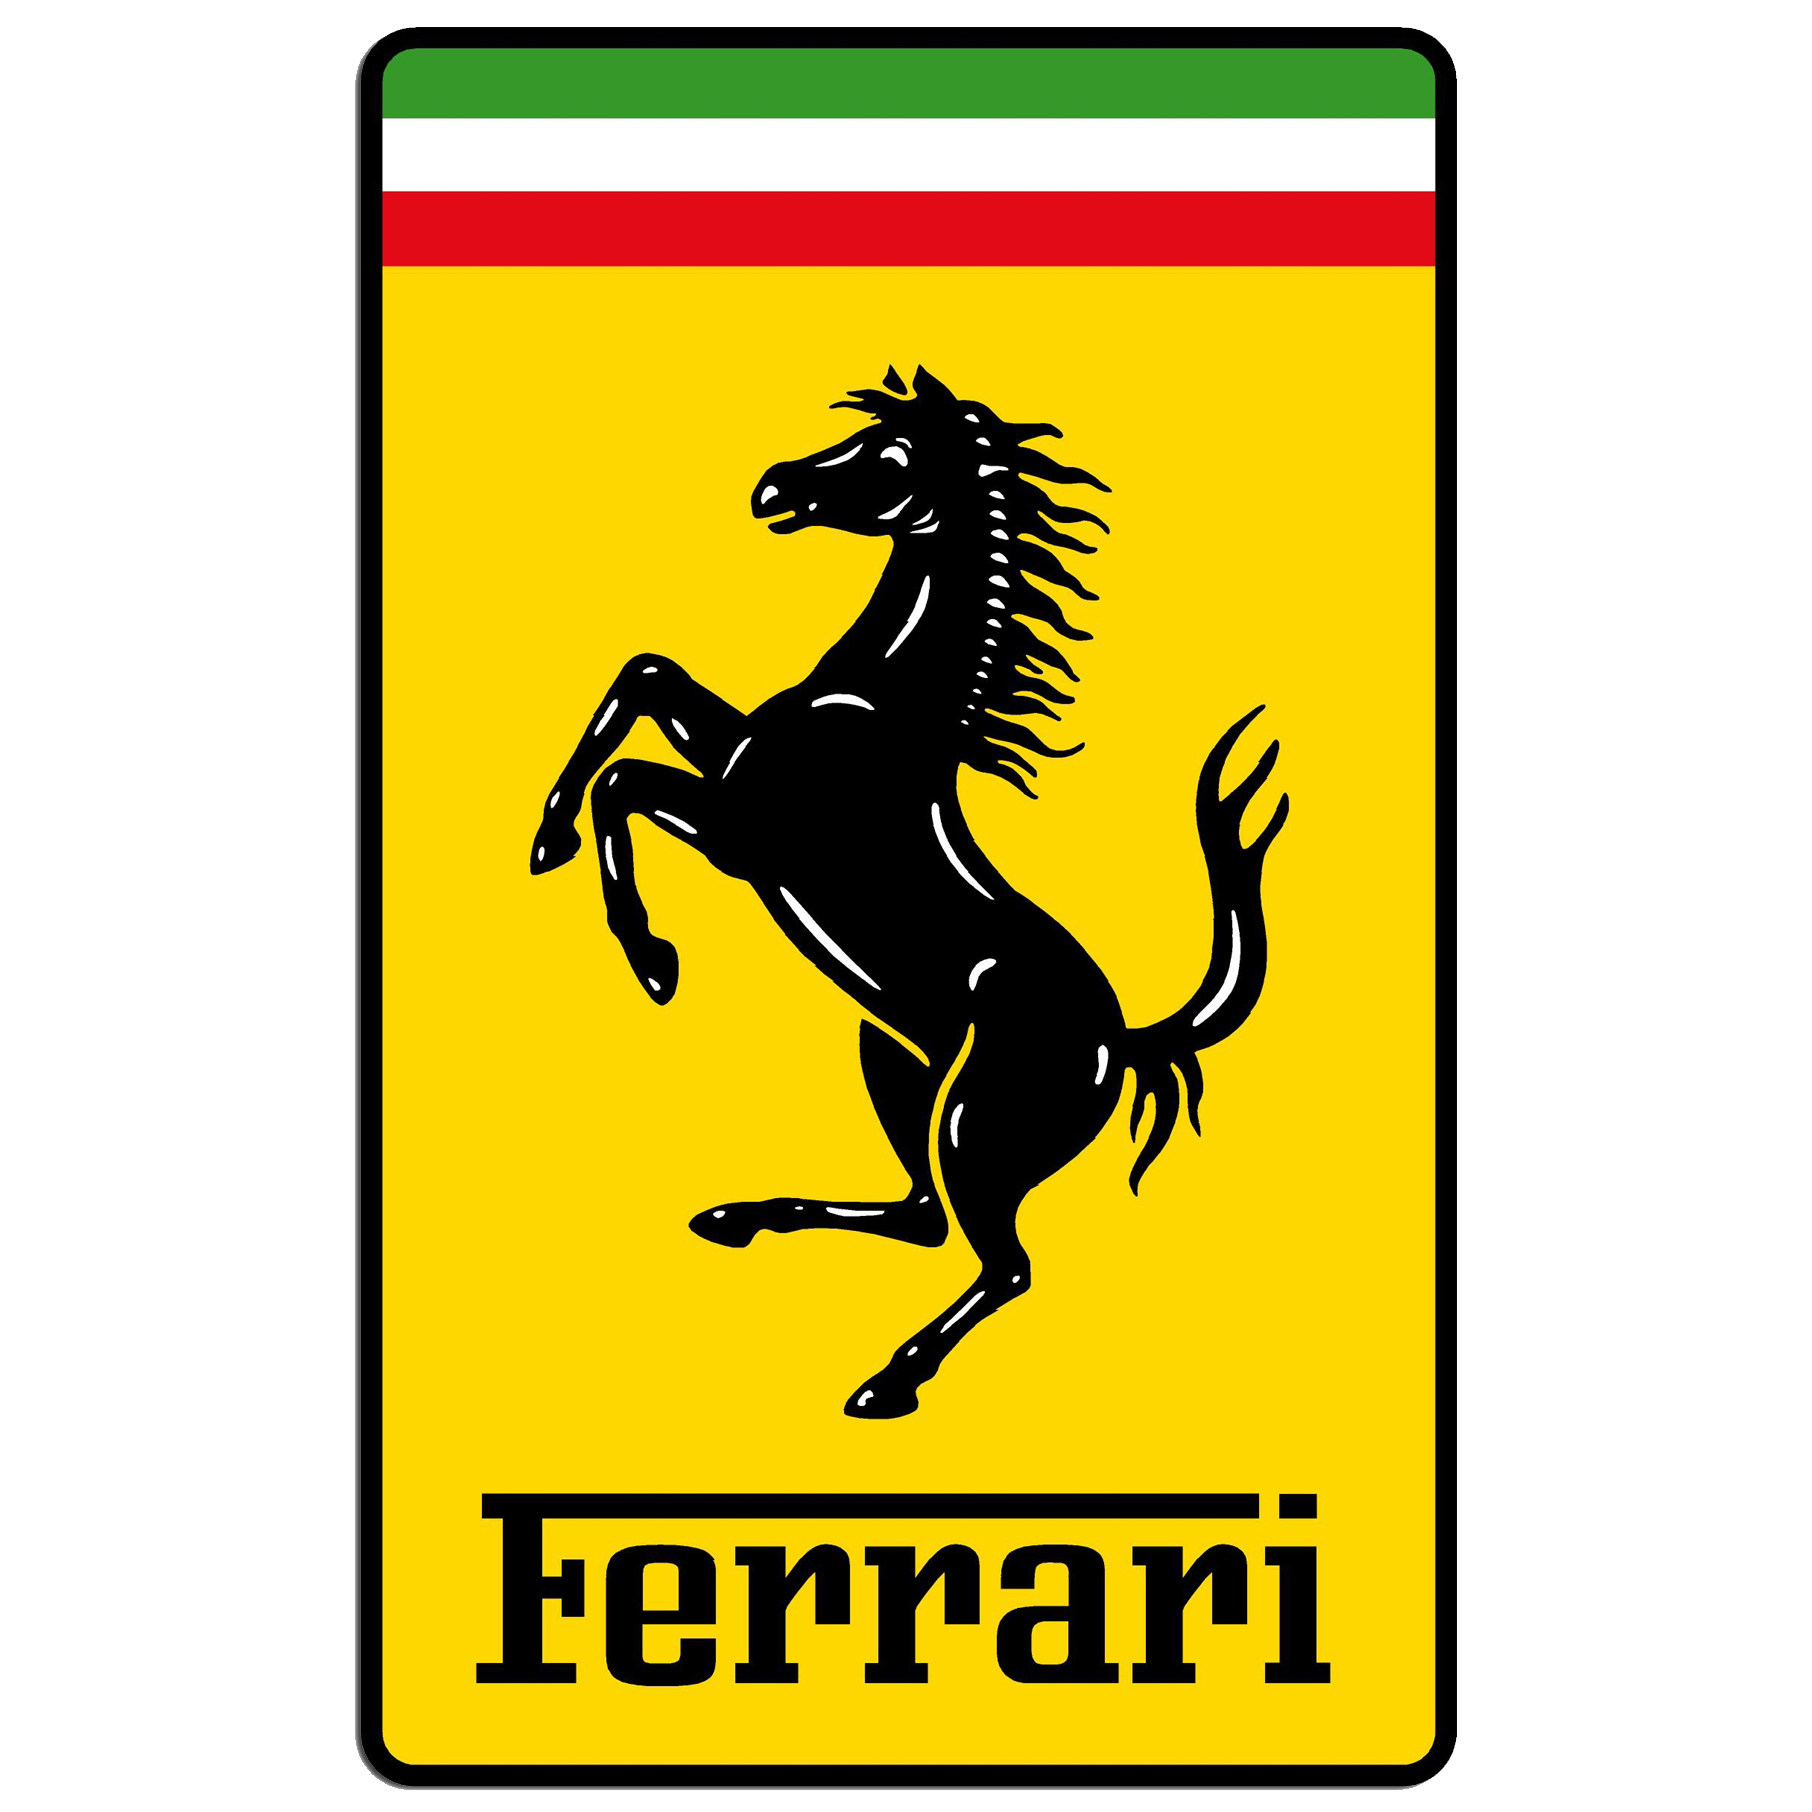 Ferrari F12 (2012 - 2017) for sale